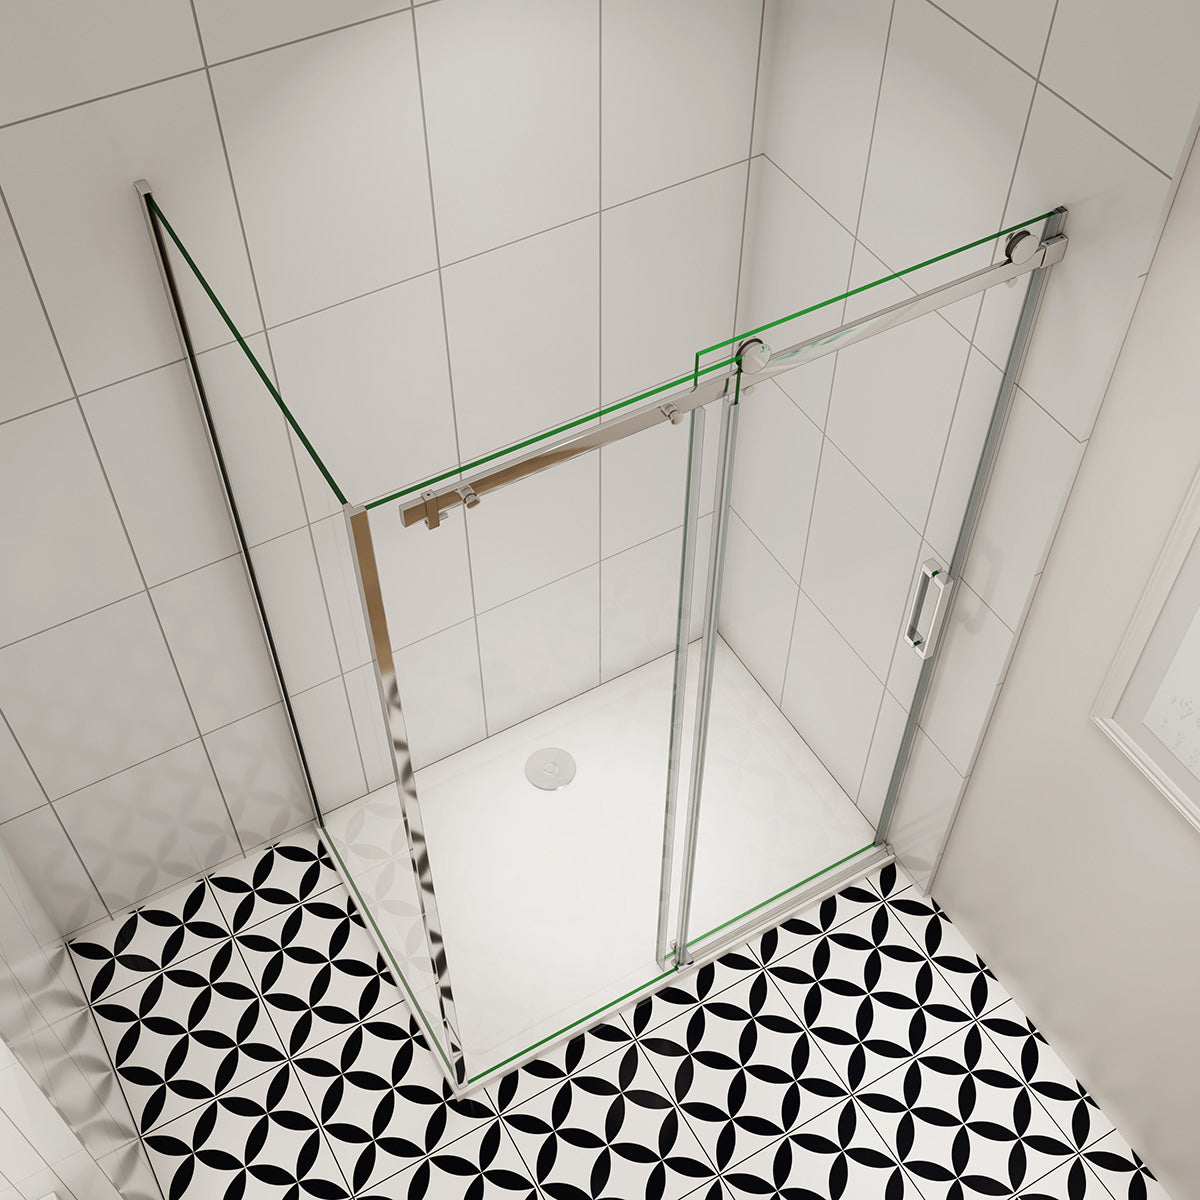 Duschtür+Seitenwand 120x80 cm Glasstärke 8mm Schiebetür Dusche Duschabtrennung Duschkabine